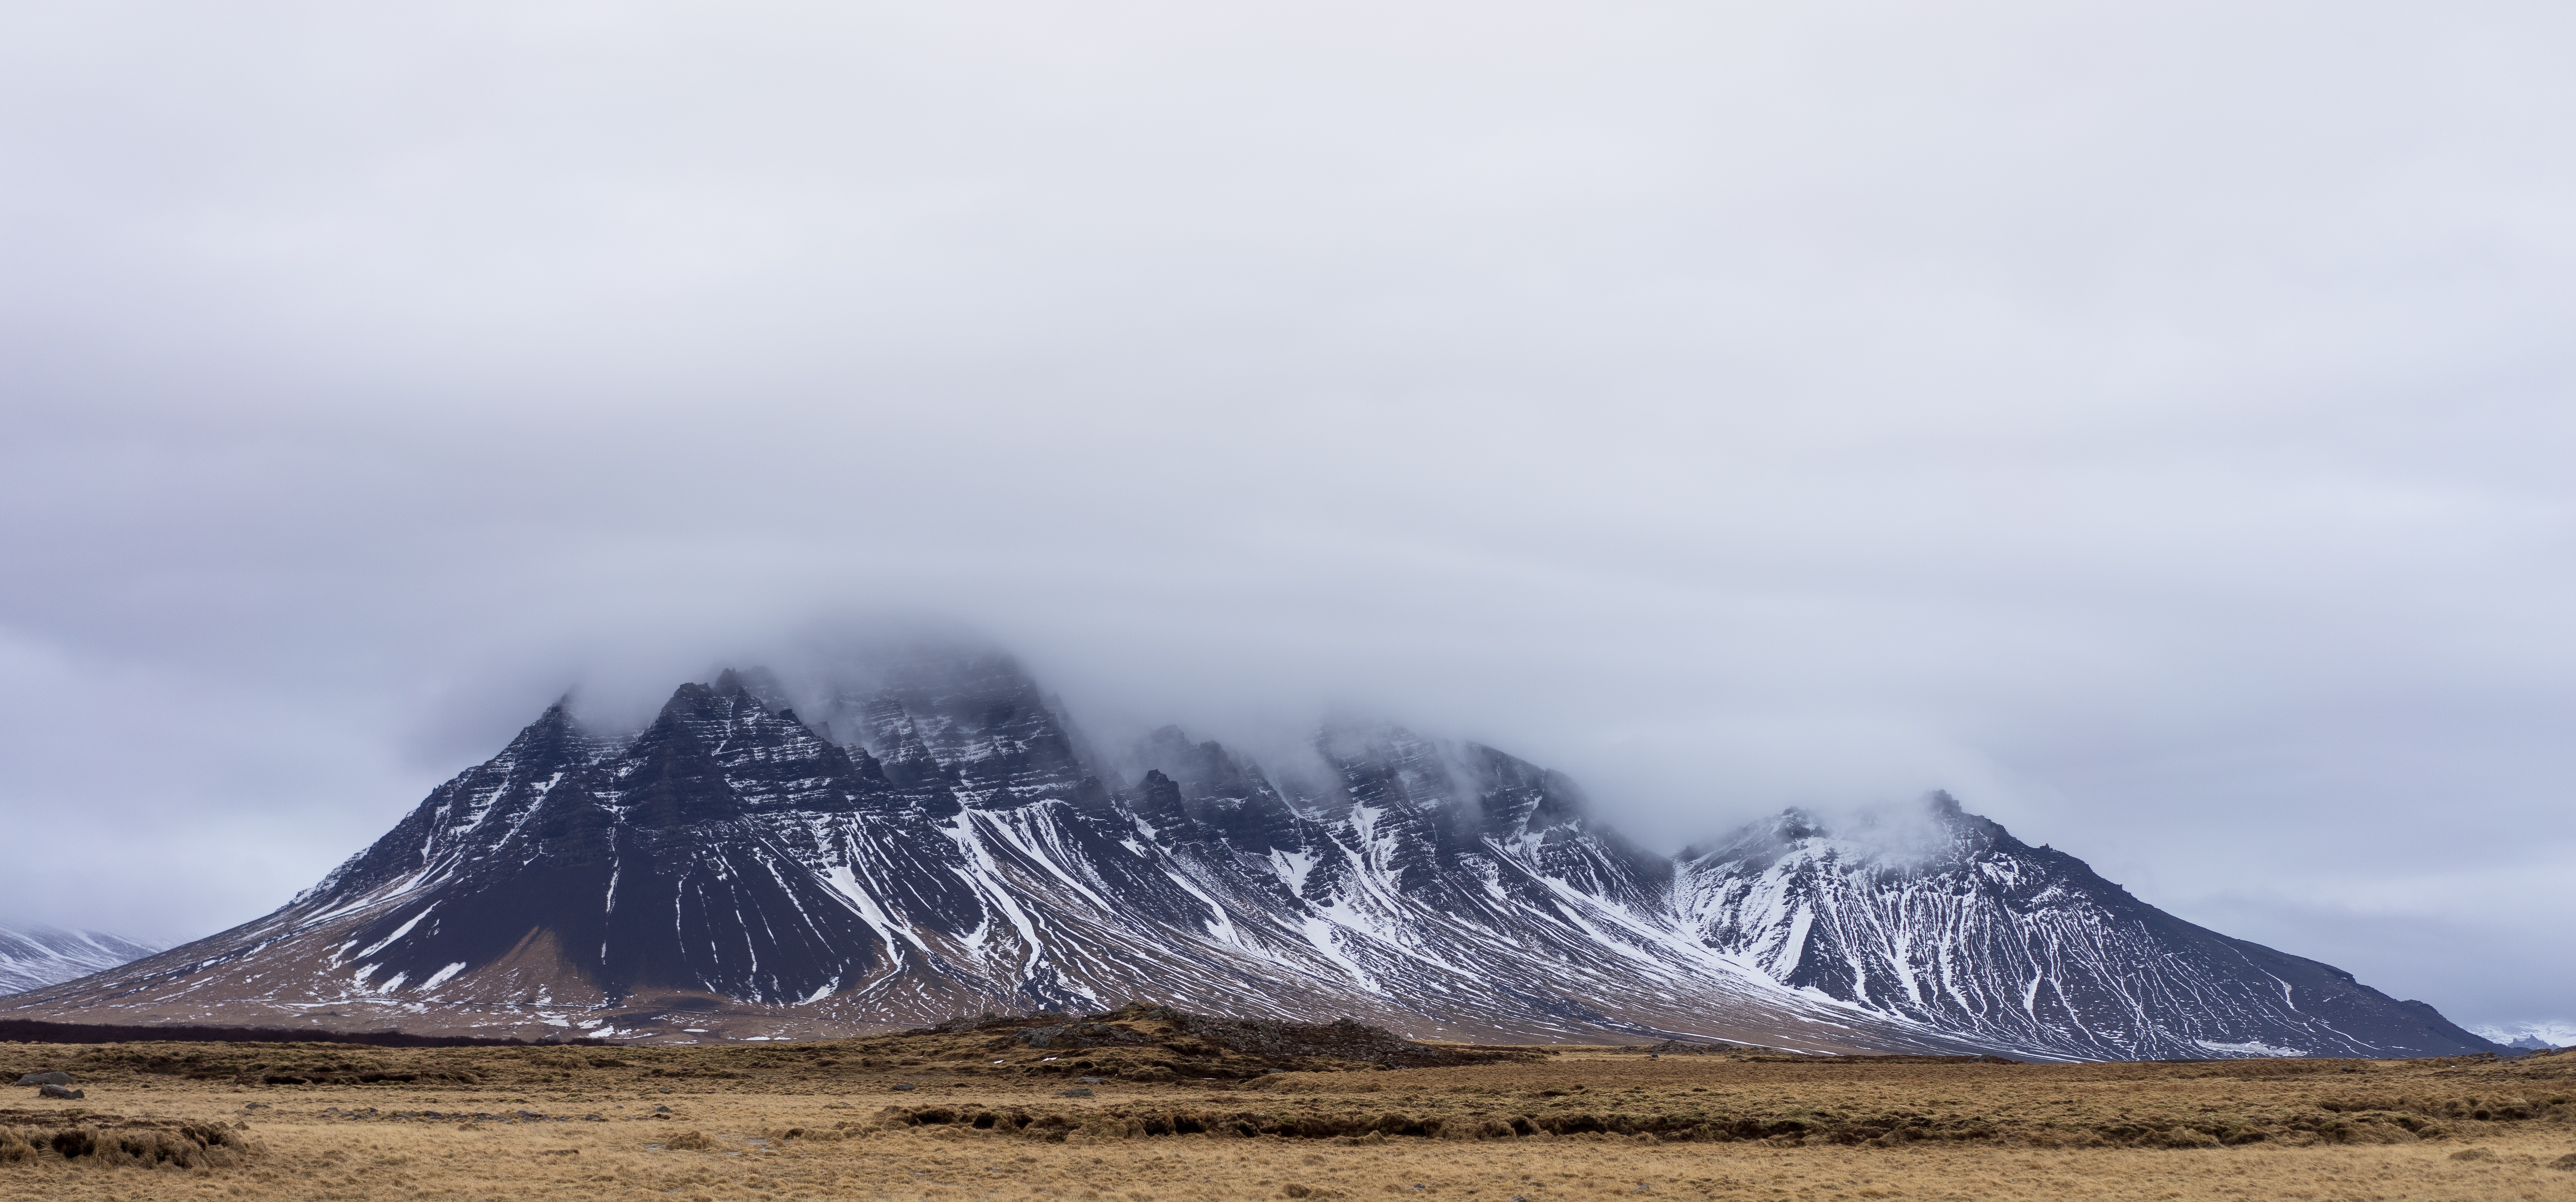 Icelandic Landscape, Cloud, Cloudy, Cold, Desert, HQ Photo